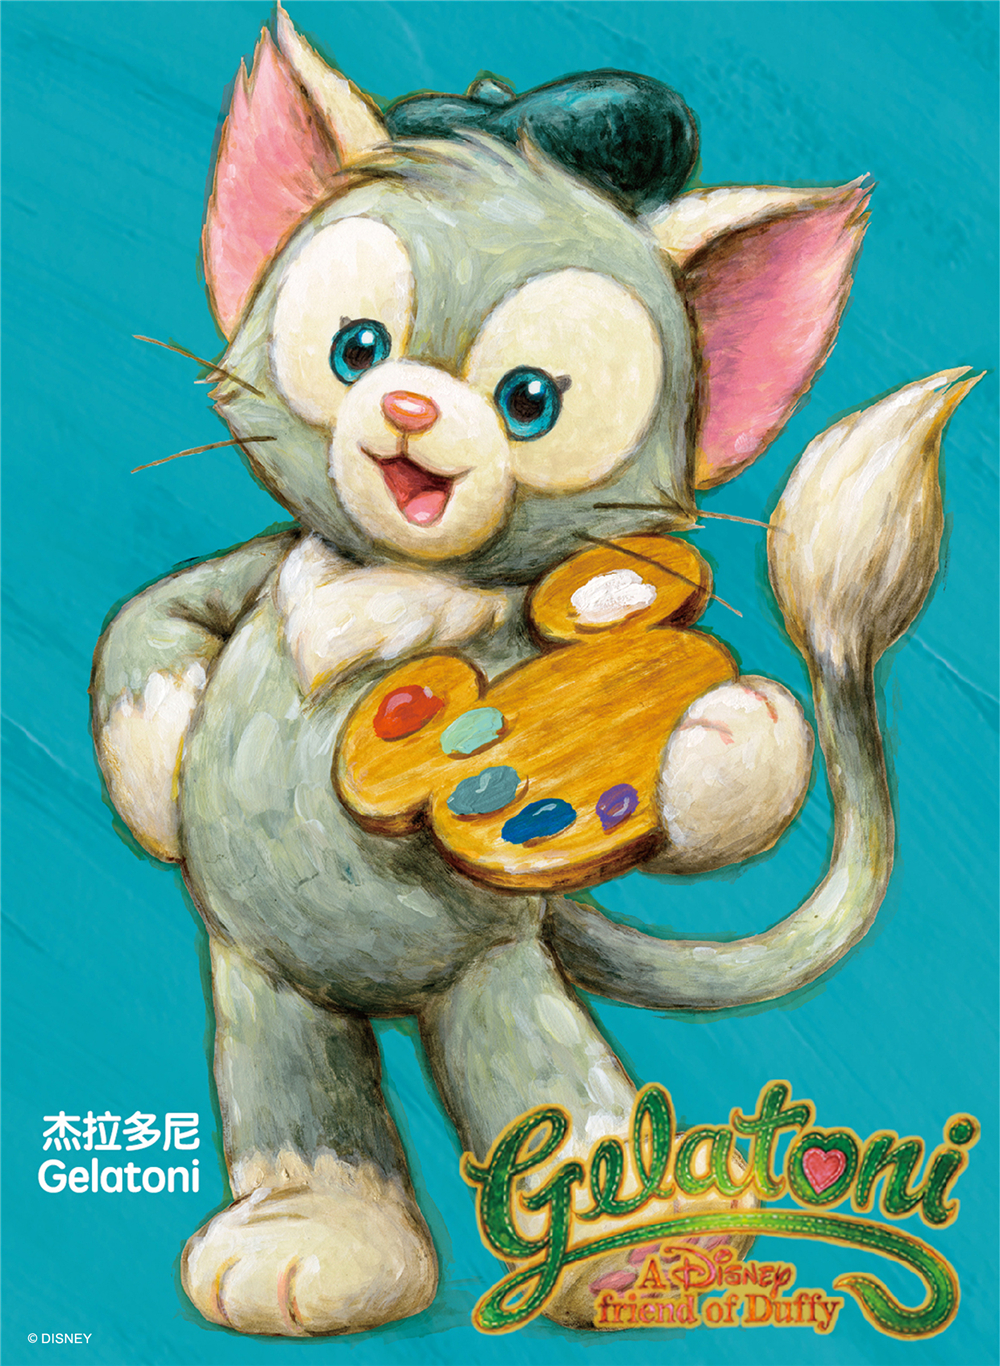 区迎来了又一位可爱萌趣的迪士尼朋友猫画家杰拉多尼(gelatoni)!